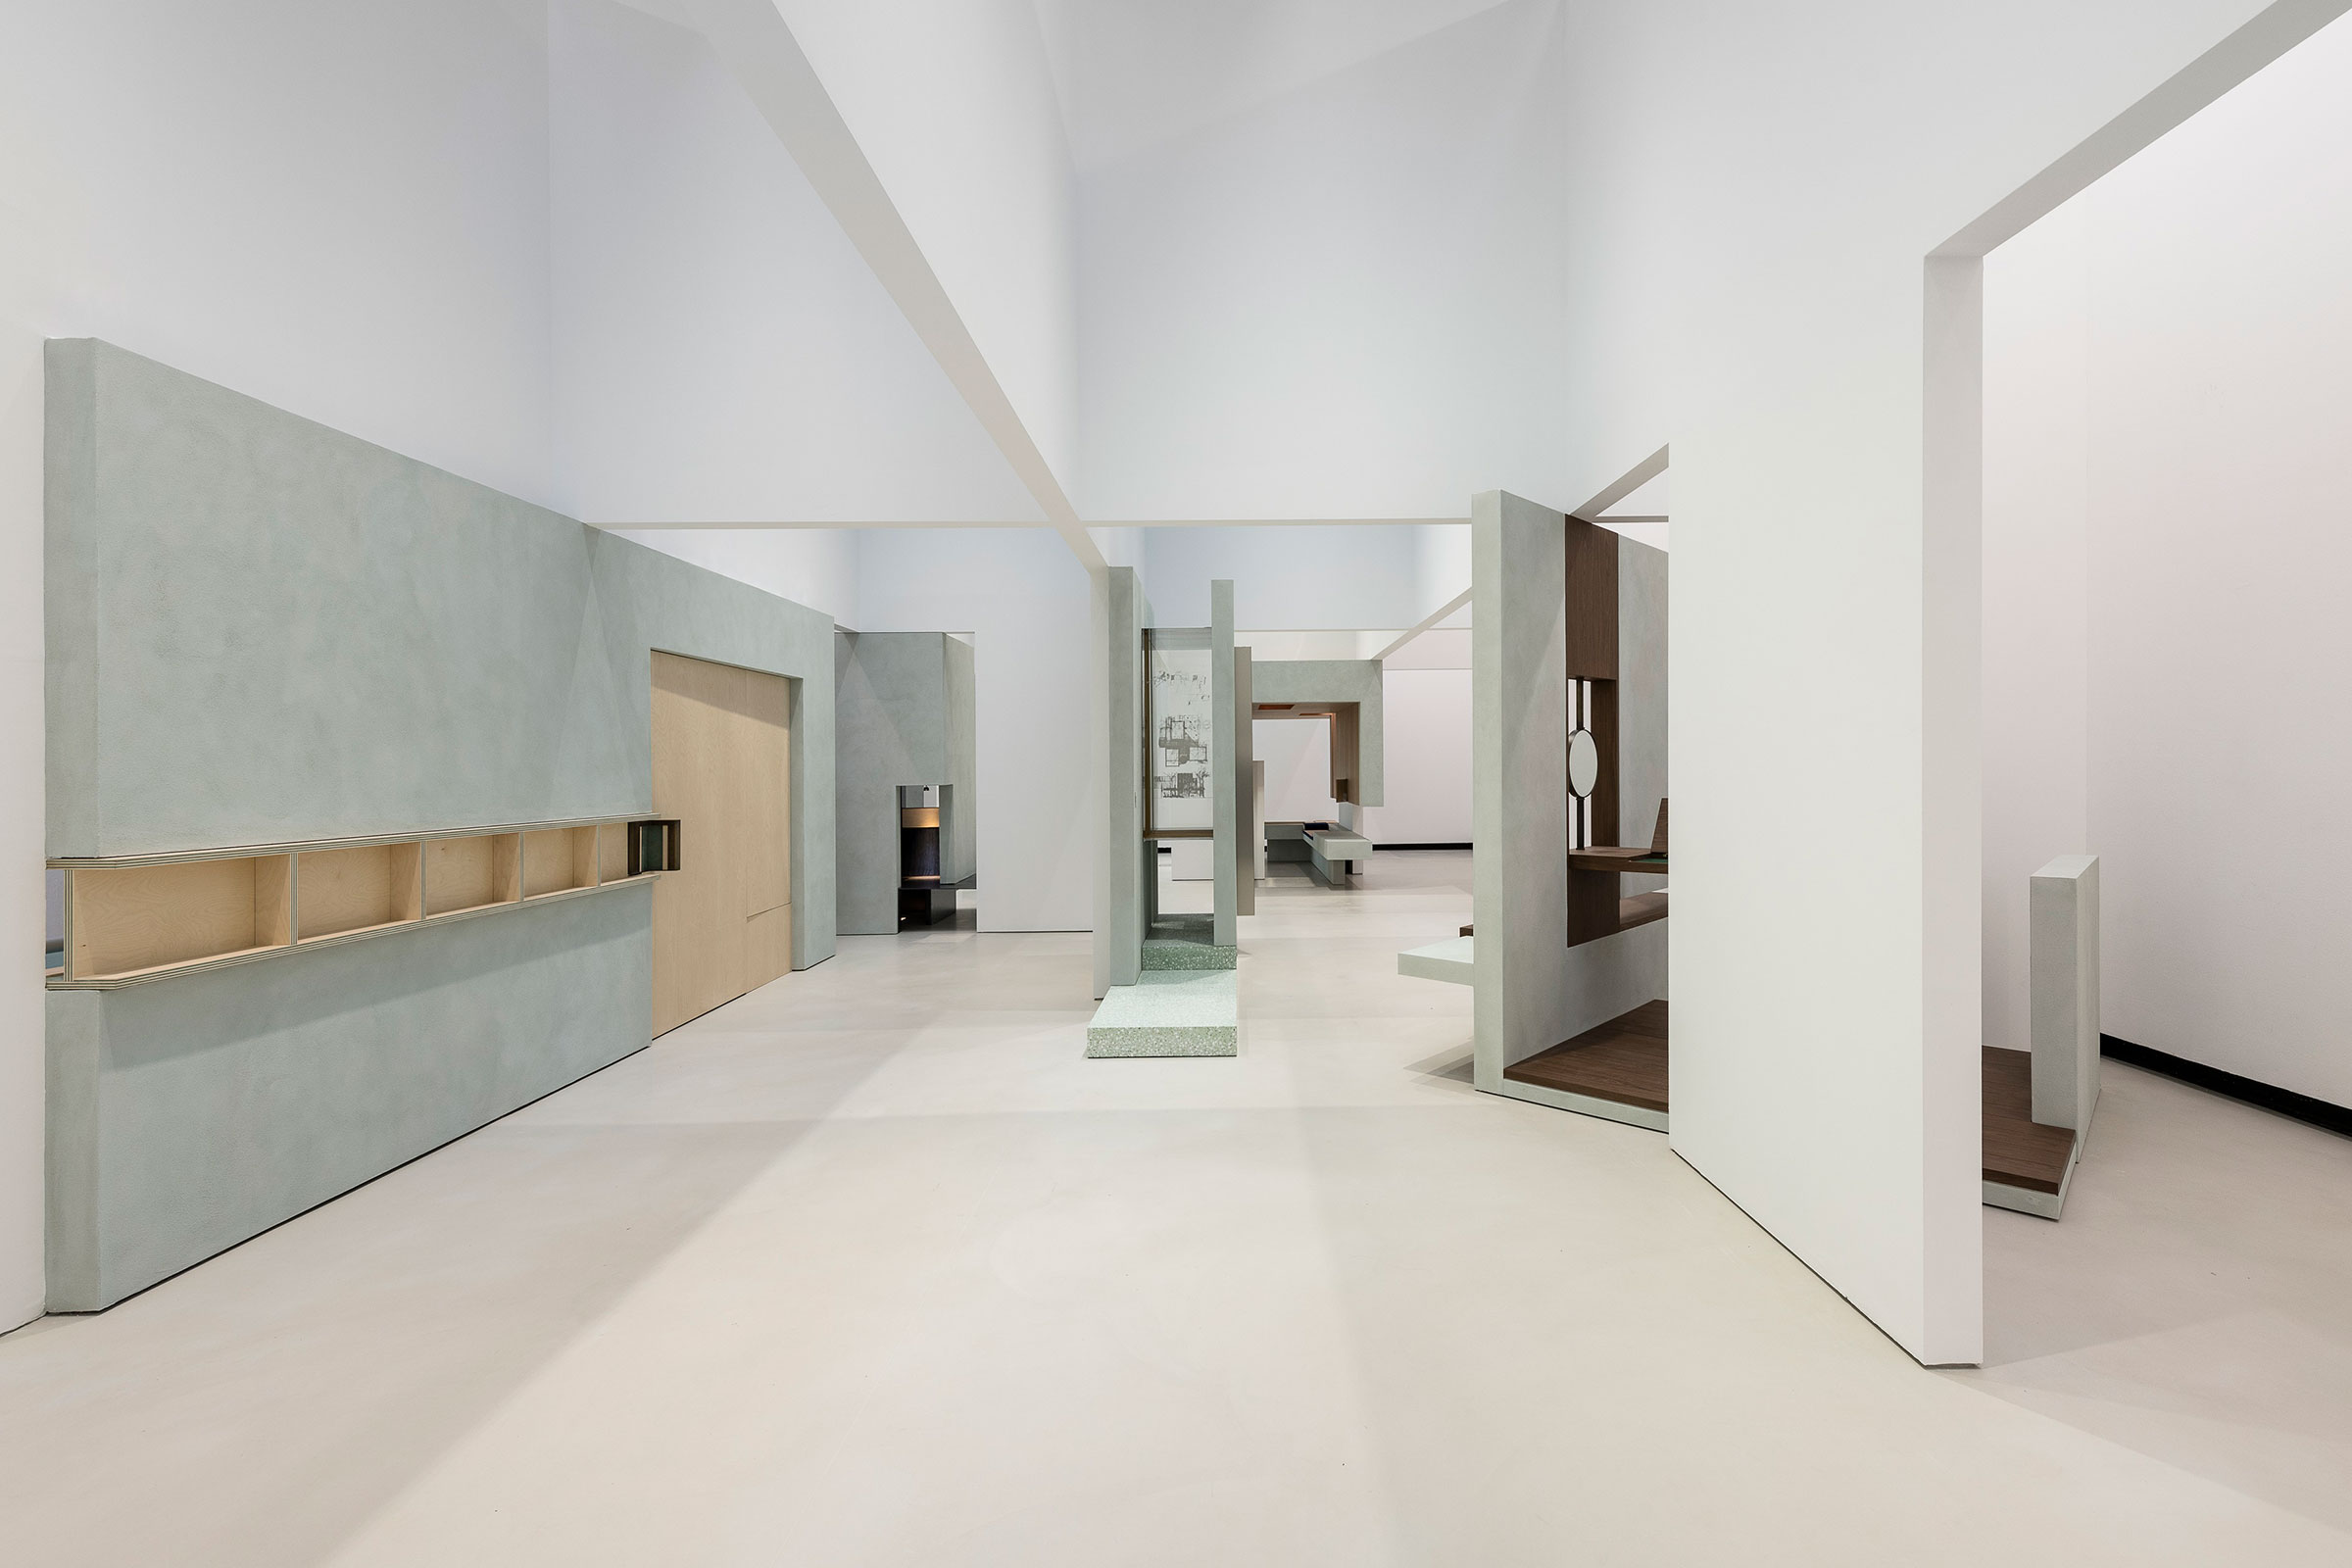 ネリ＆フーの、イタリア国立21世紀美術館での建築展「Traversing 